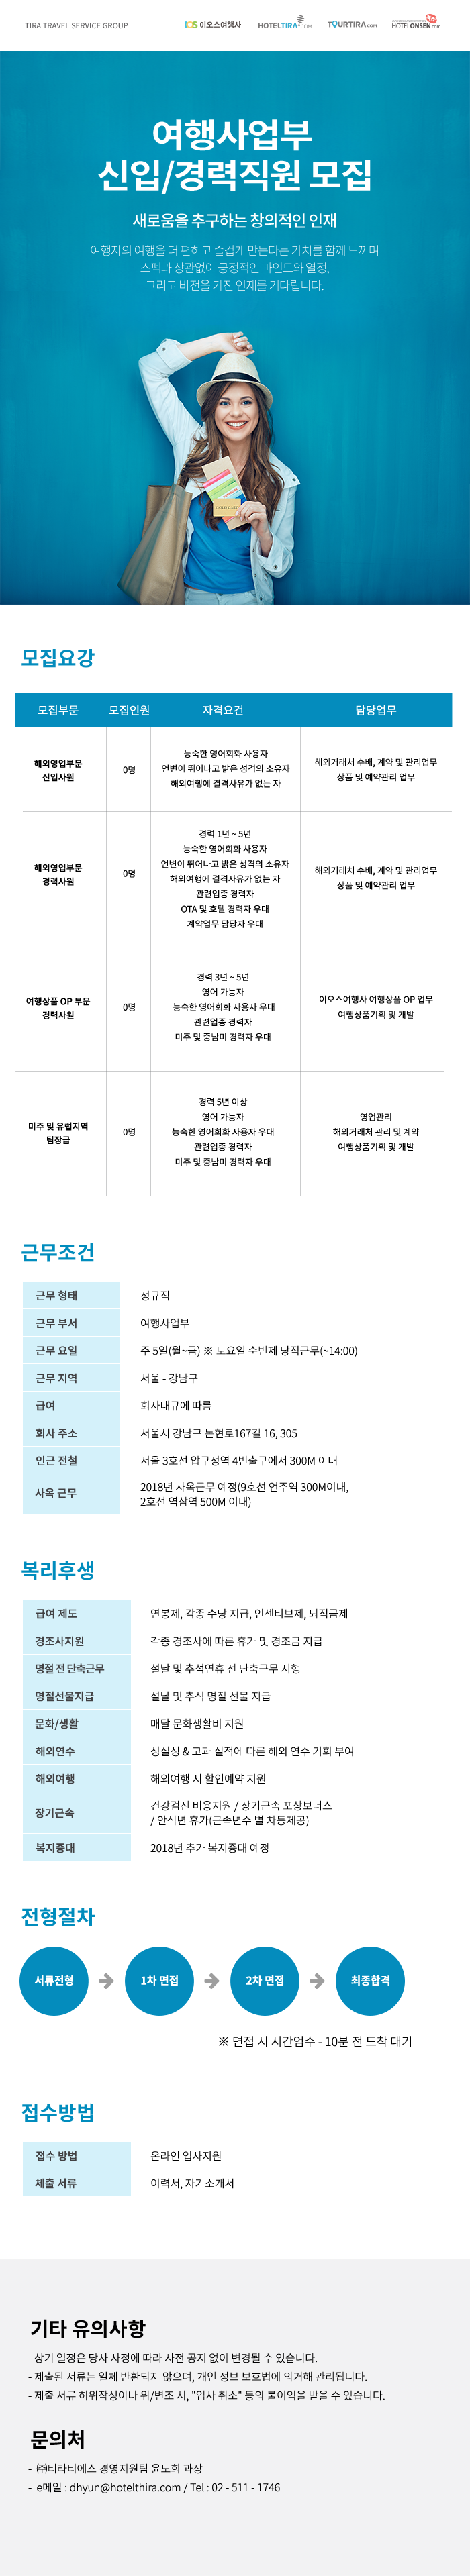 ㈜티라티에스 2018년 상반기 여행사업부 신입/경력 모집